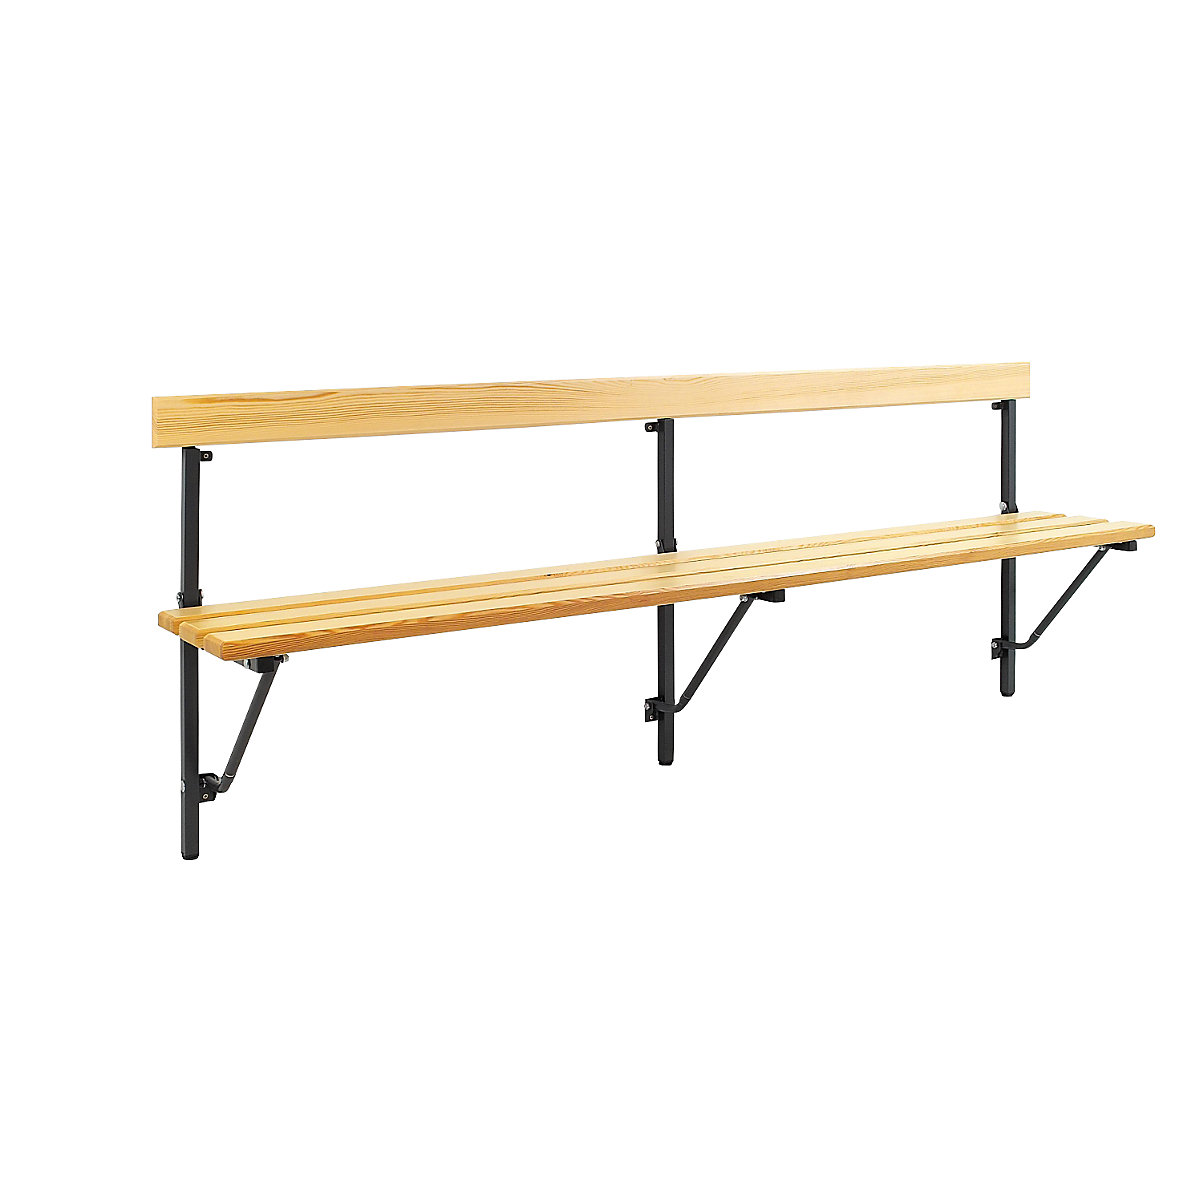 Sypro – Sklopná nástenná lavica, sklopná, pevná dĺžka 2000 mm, s drevenými lamelami